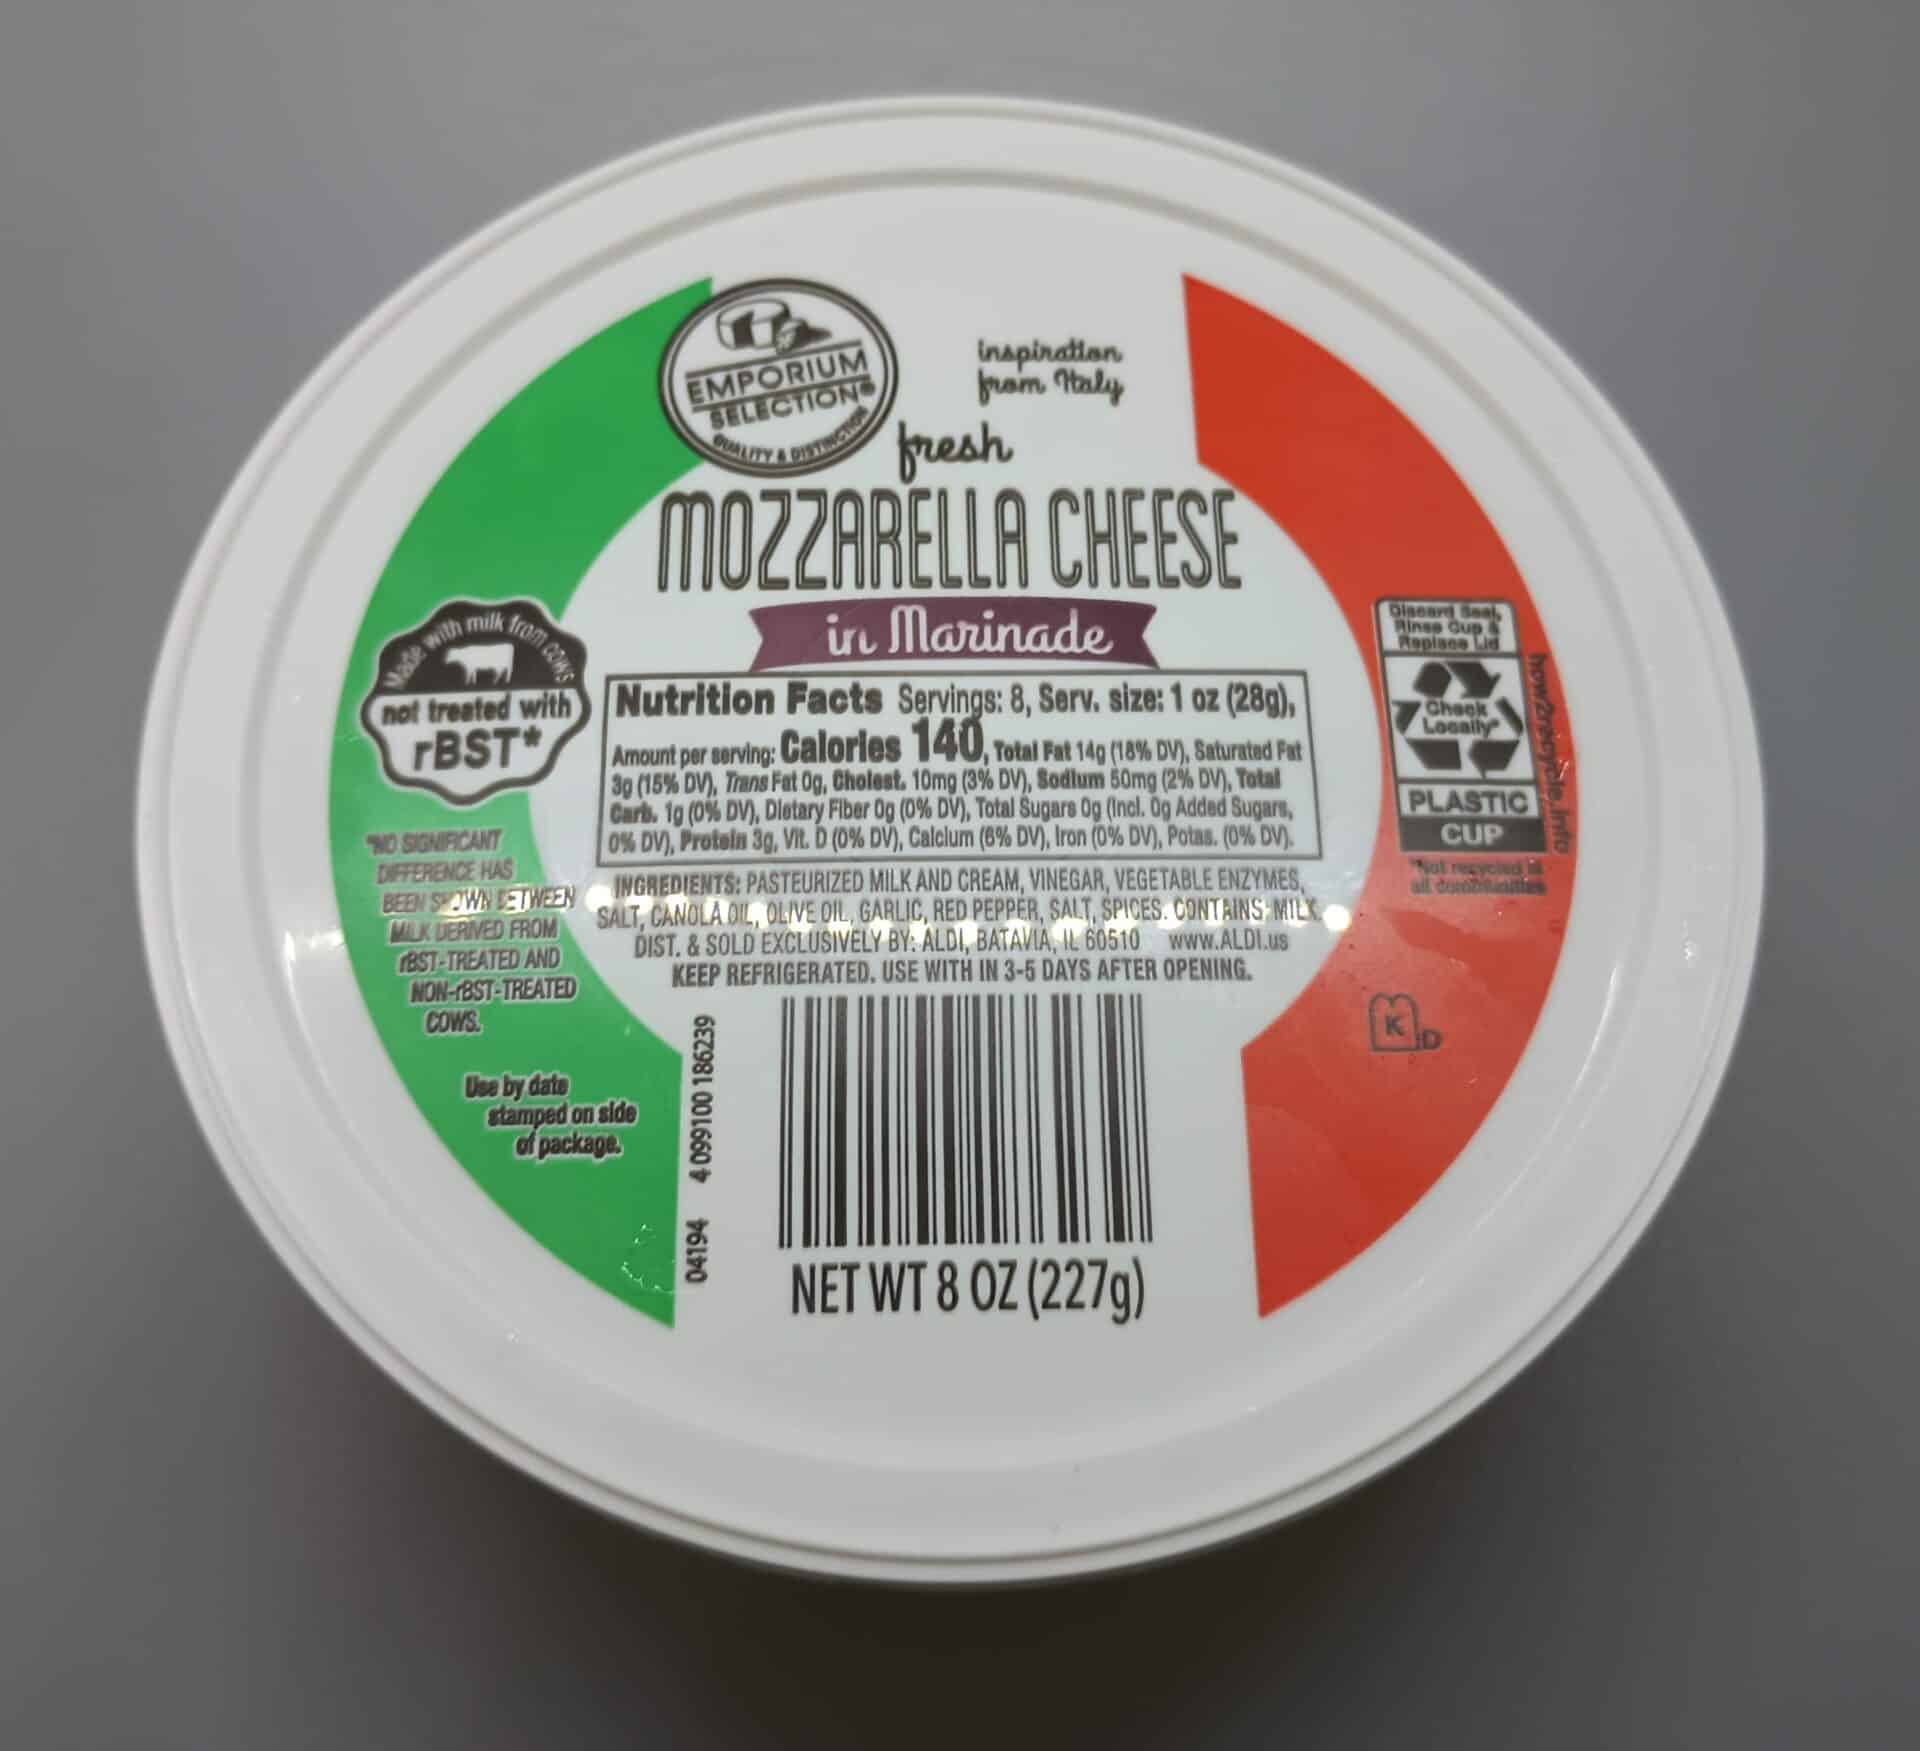 Emporium Selection Mozzarella Cheese in Marinade